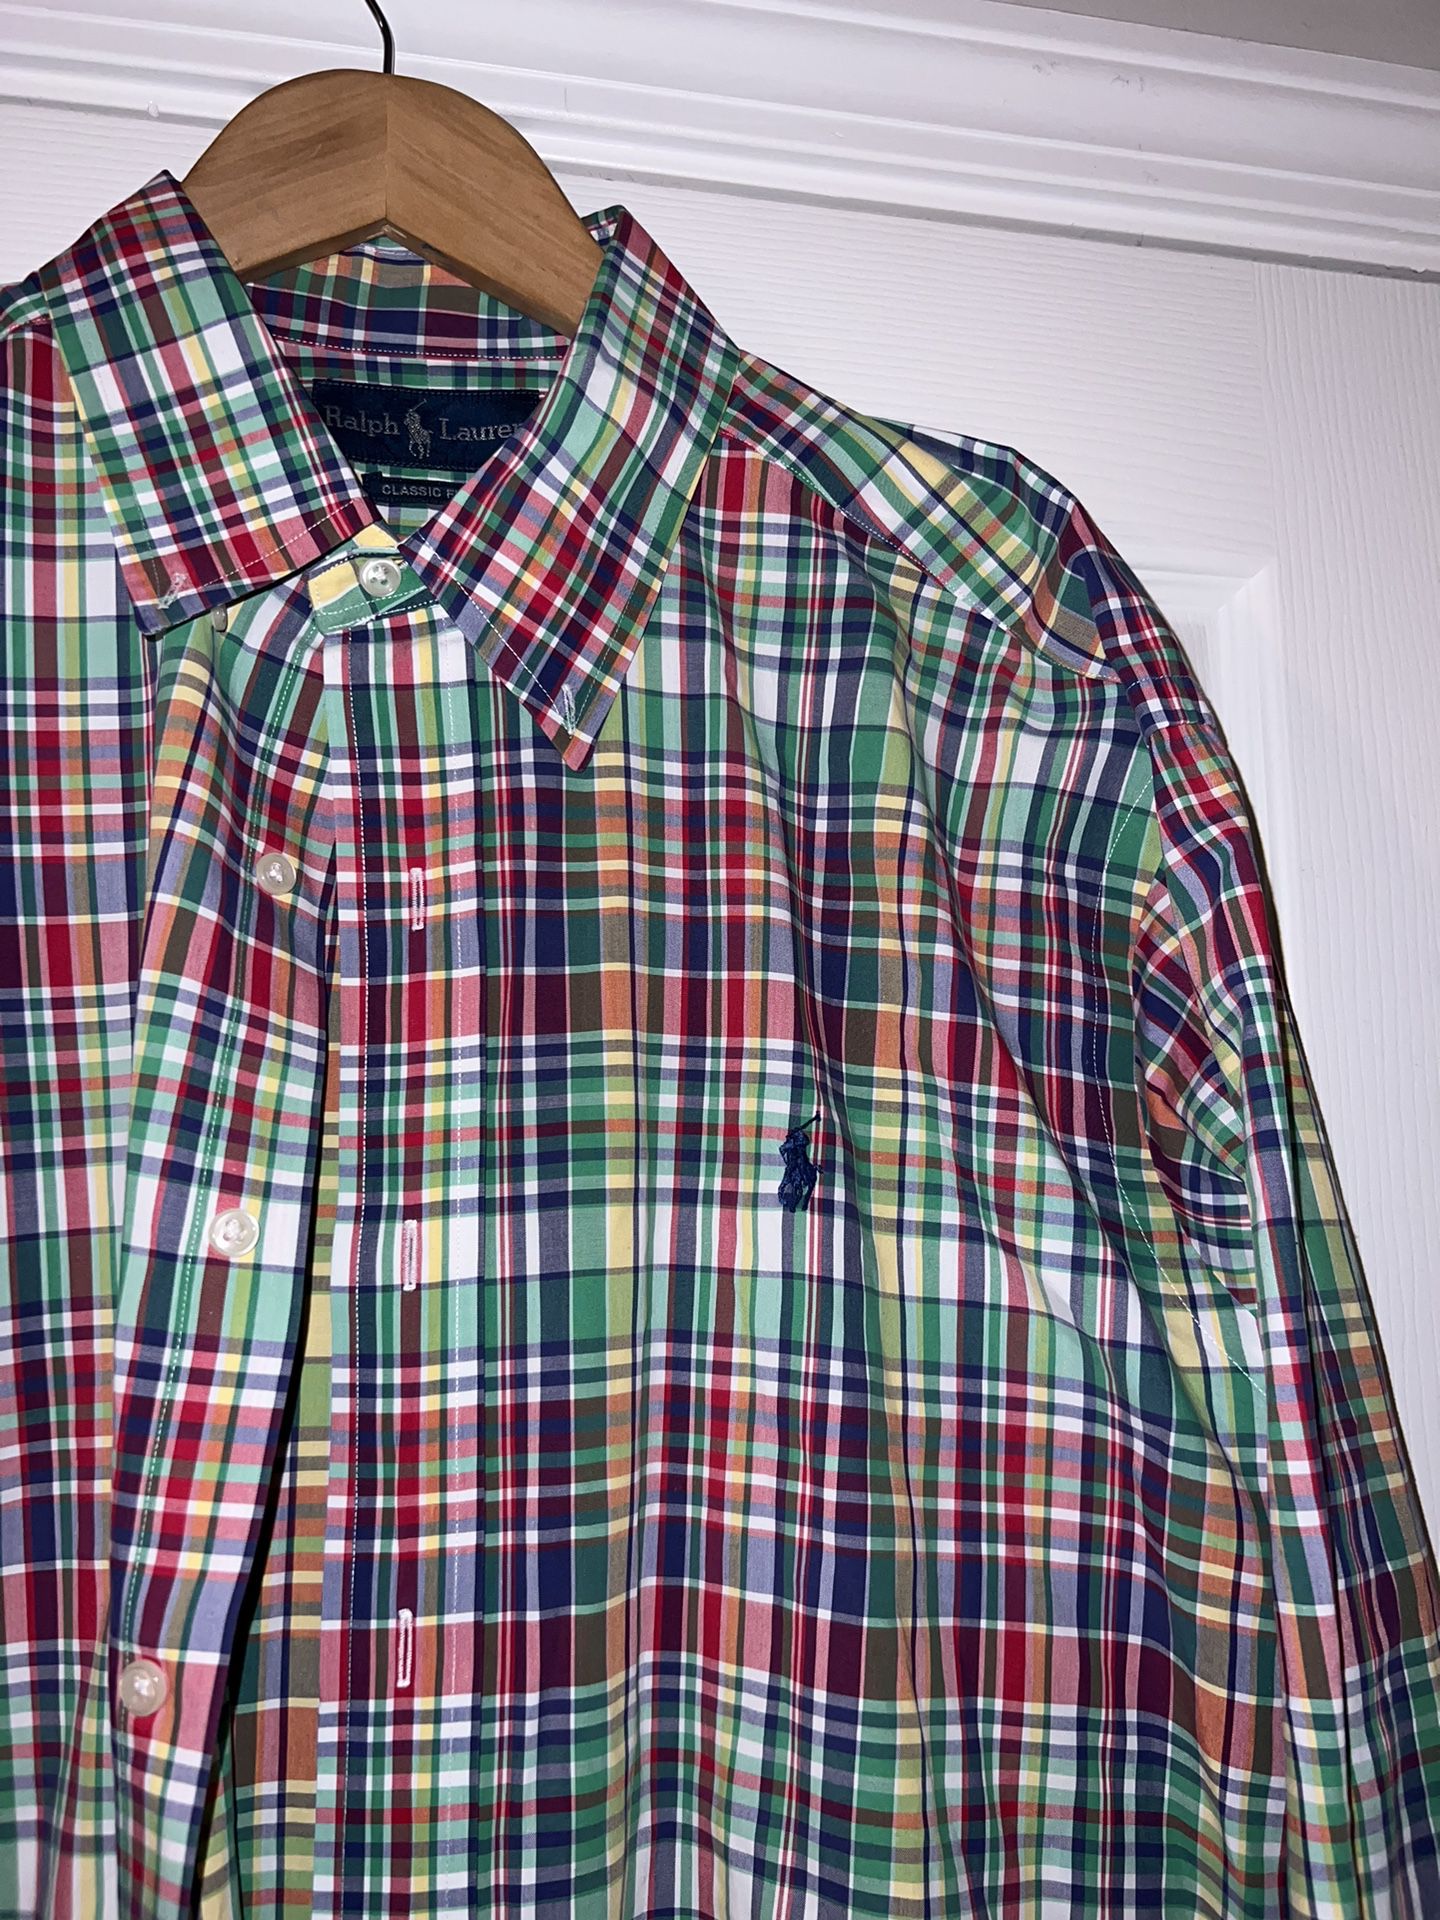 Ralph Lauren Polo long sleeve shirt size XL